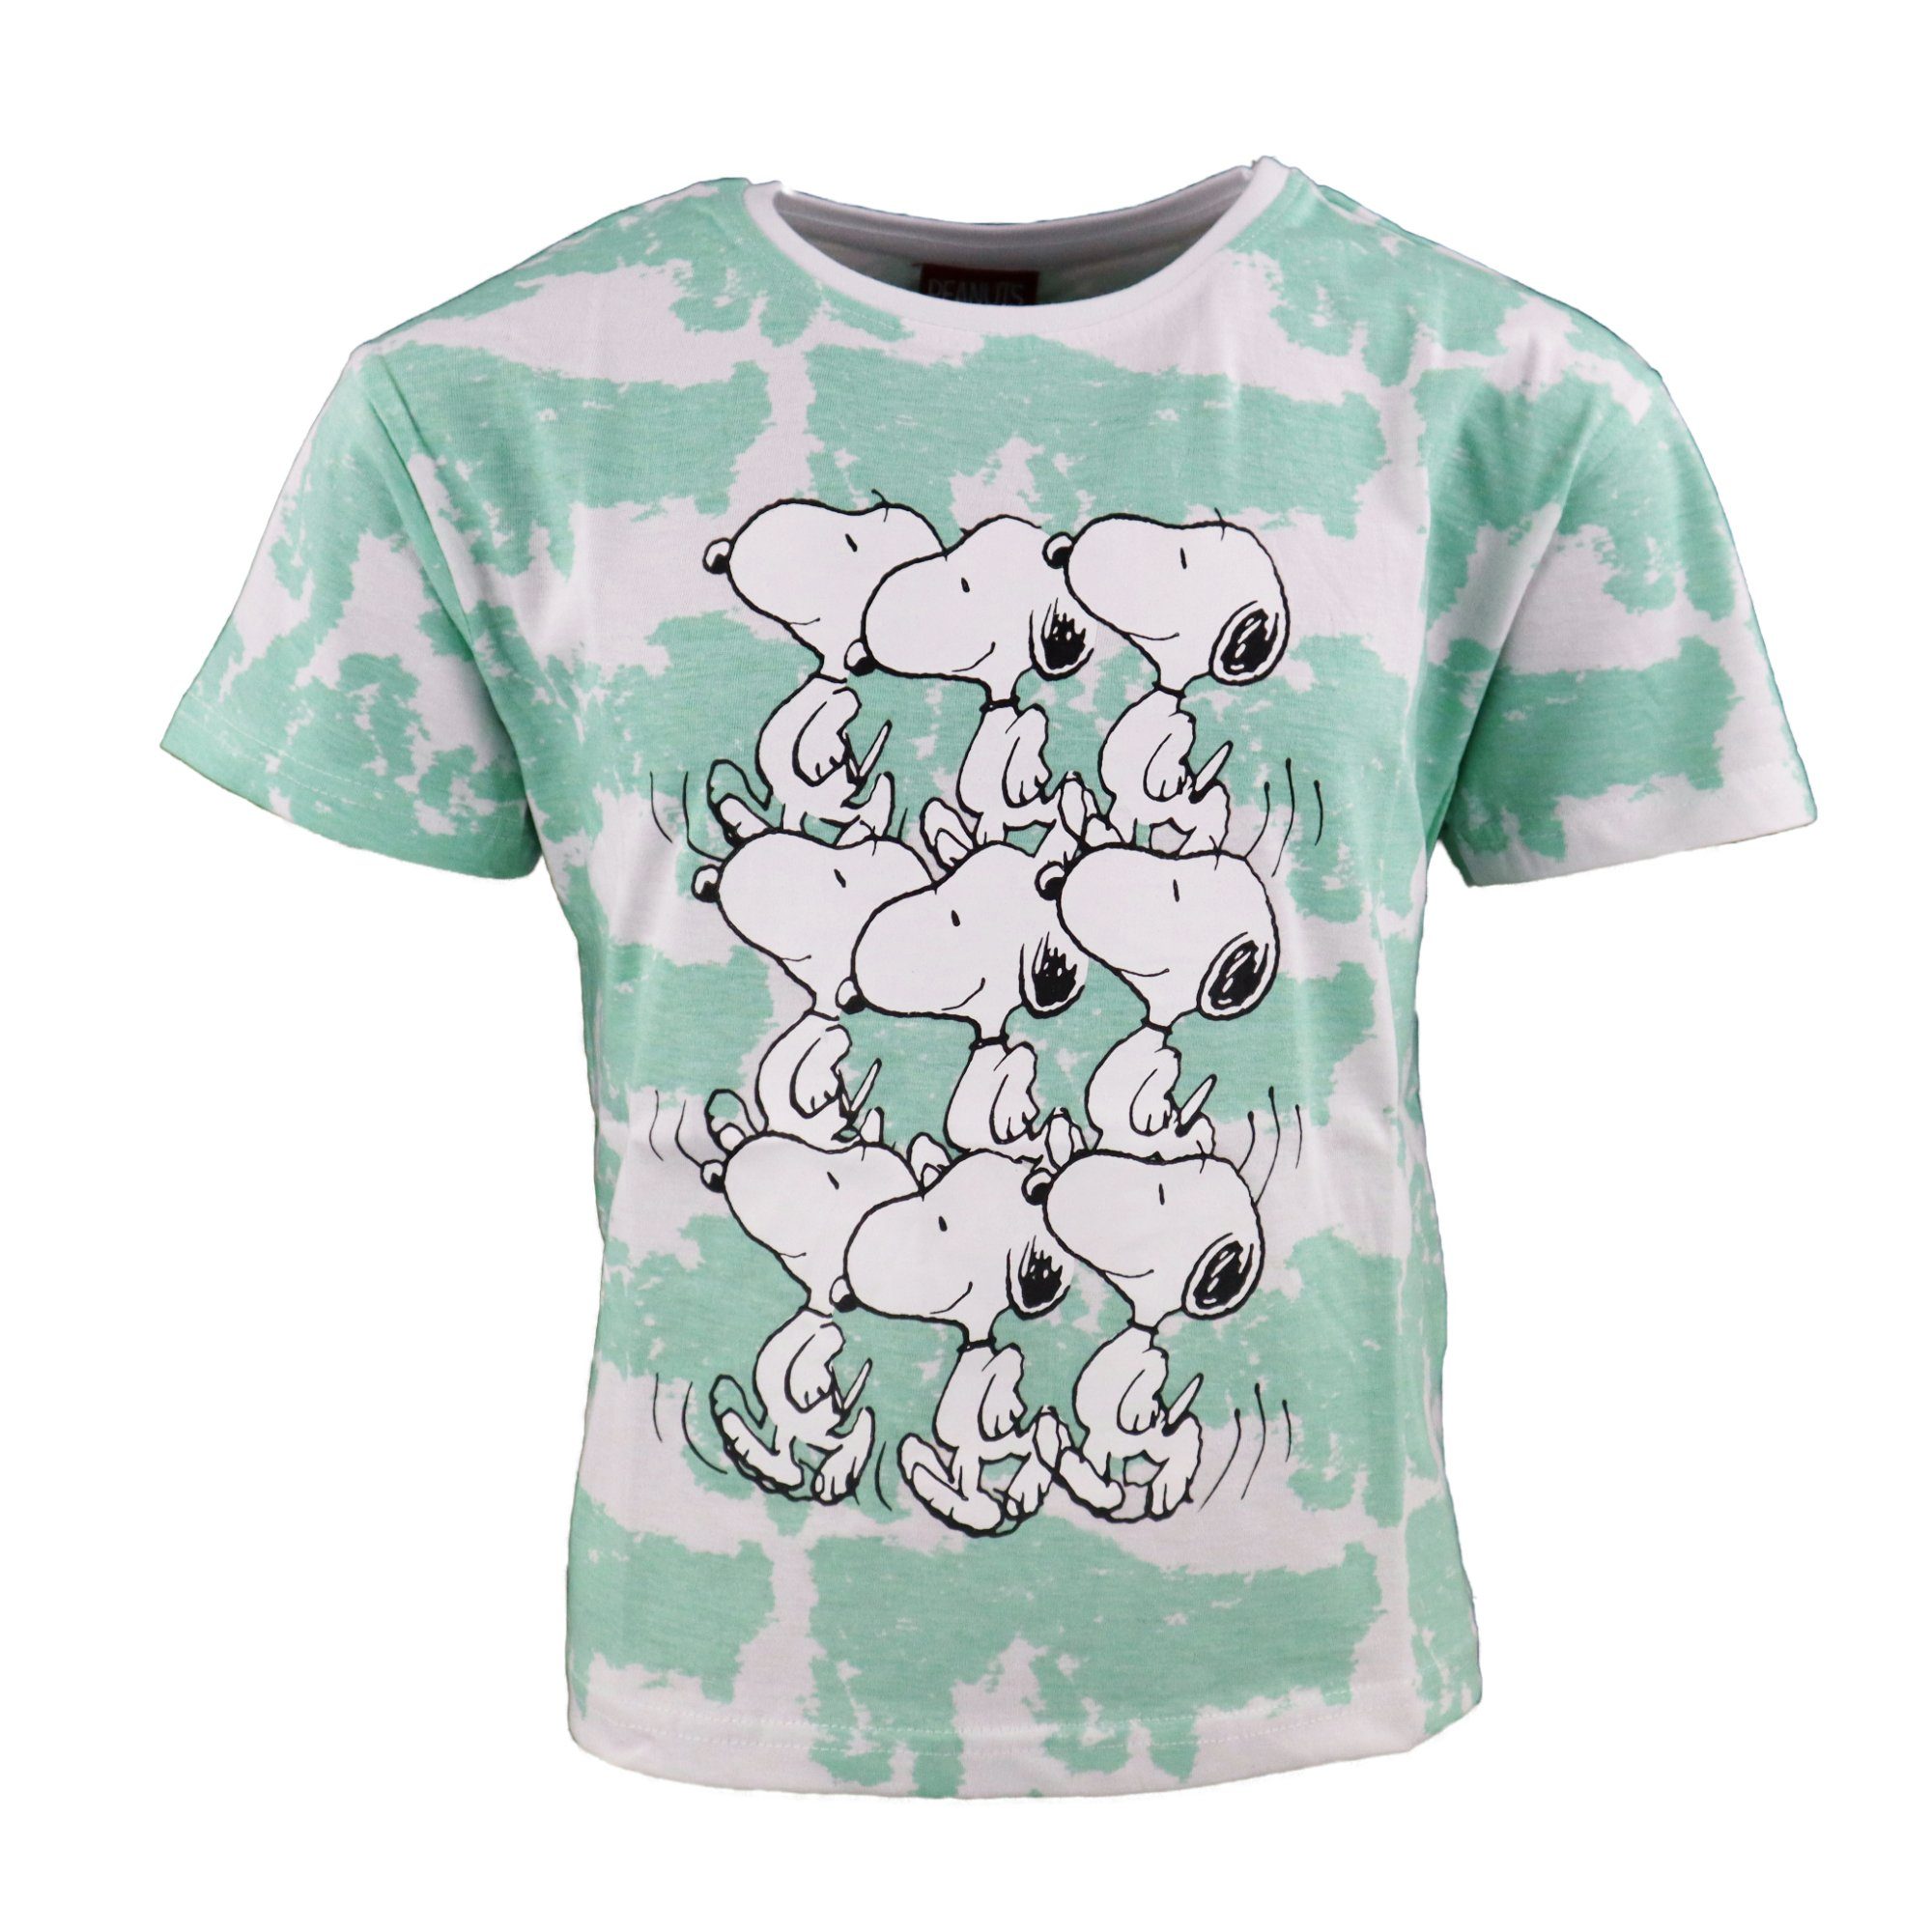 Snoopy Print-Shirt Snoopy Kinder Jugend Mädchen T-Shirt Shirt Gr. 134 bis 164, 100% baumwolle Grün